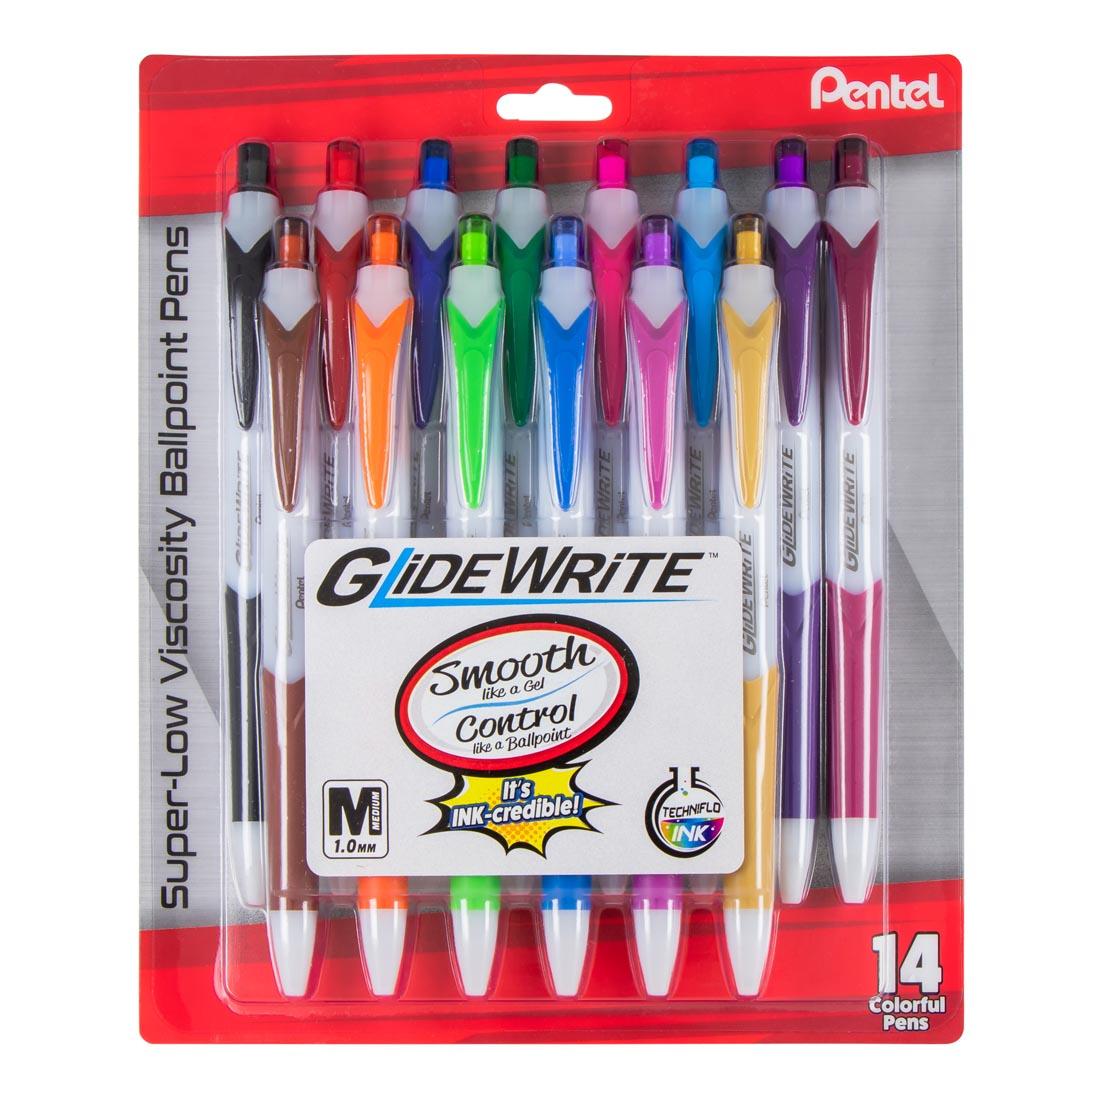 Package of Pentel GlideWrite Ballpoint Pens